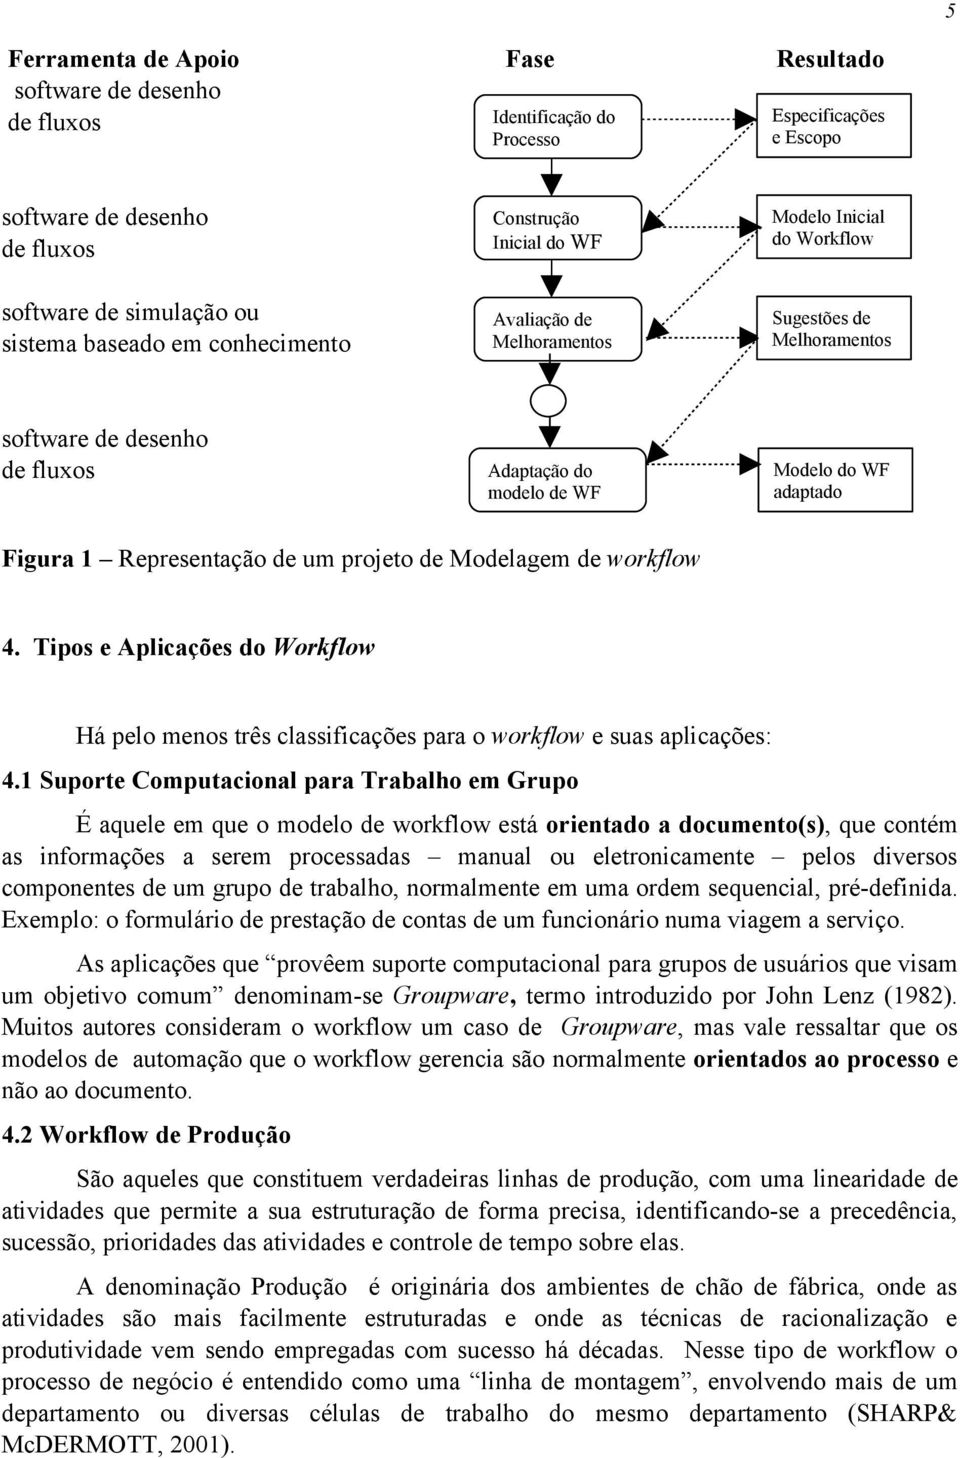 Figura 1 Representação de um projeto de Modelagem de workflow 4. Tipos e Aplicações do Workflow Há pelo menos três classificações para o workflow e suas aplicações: 4.